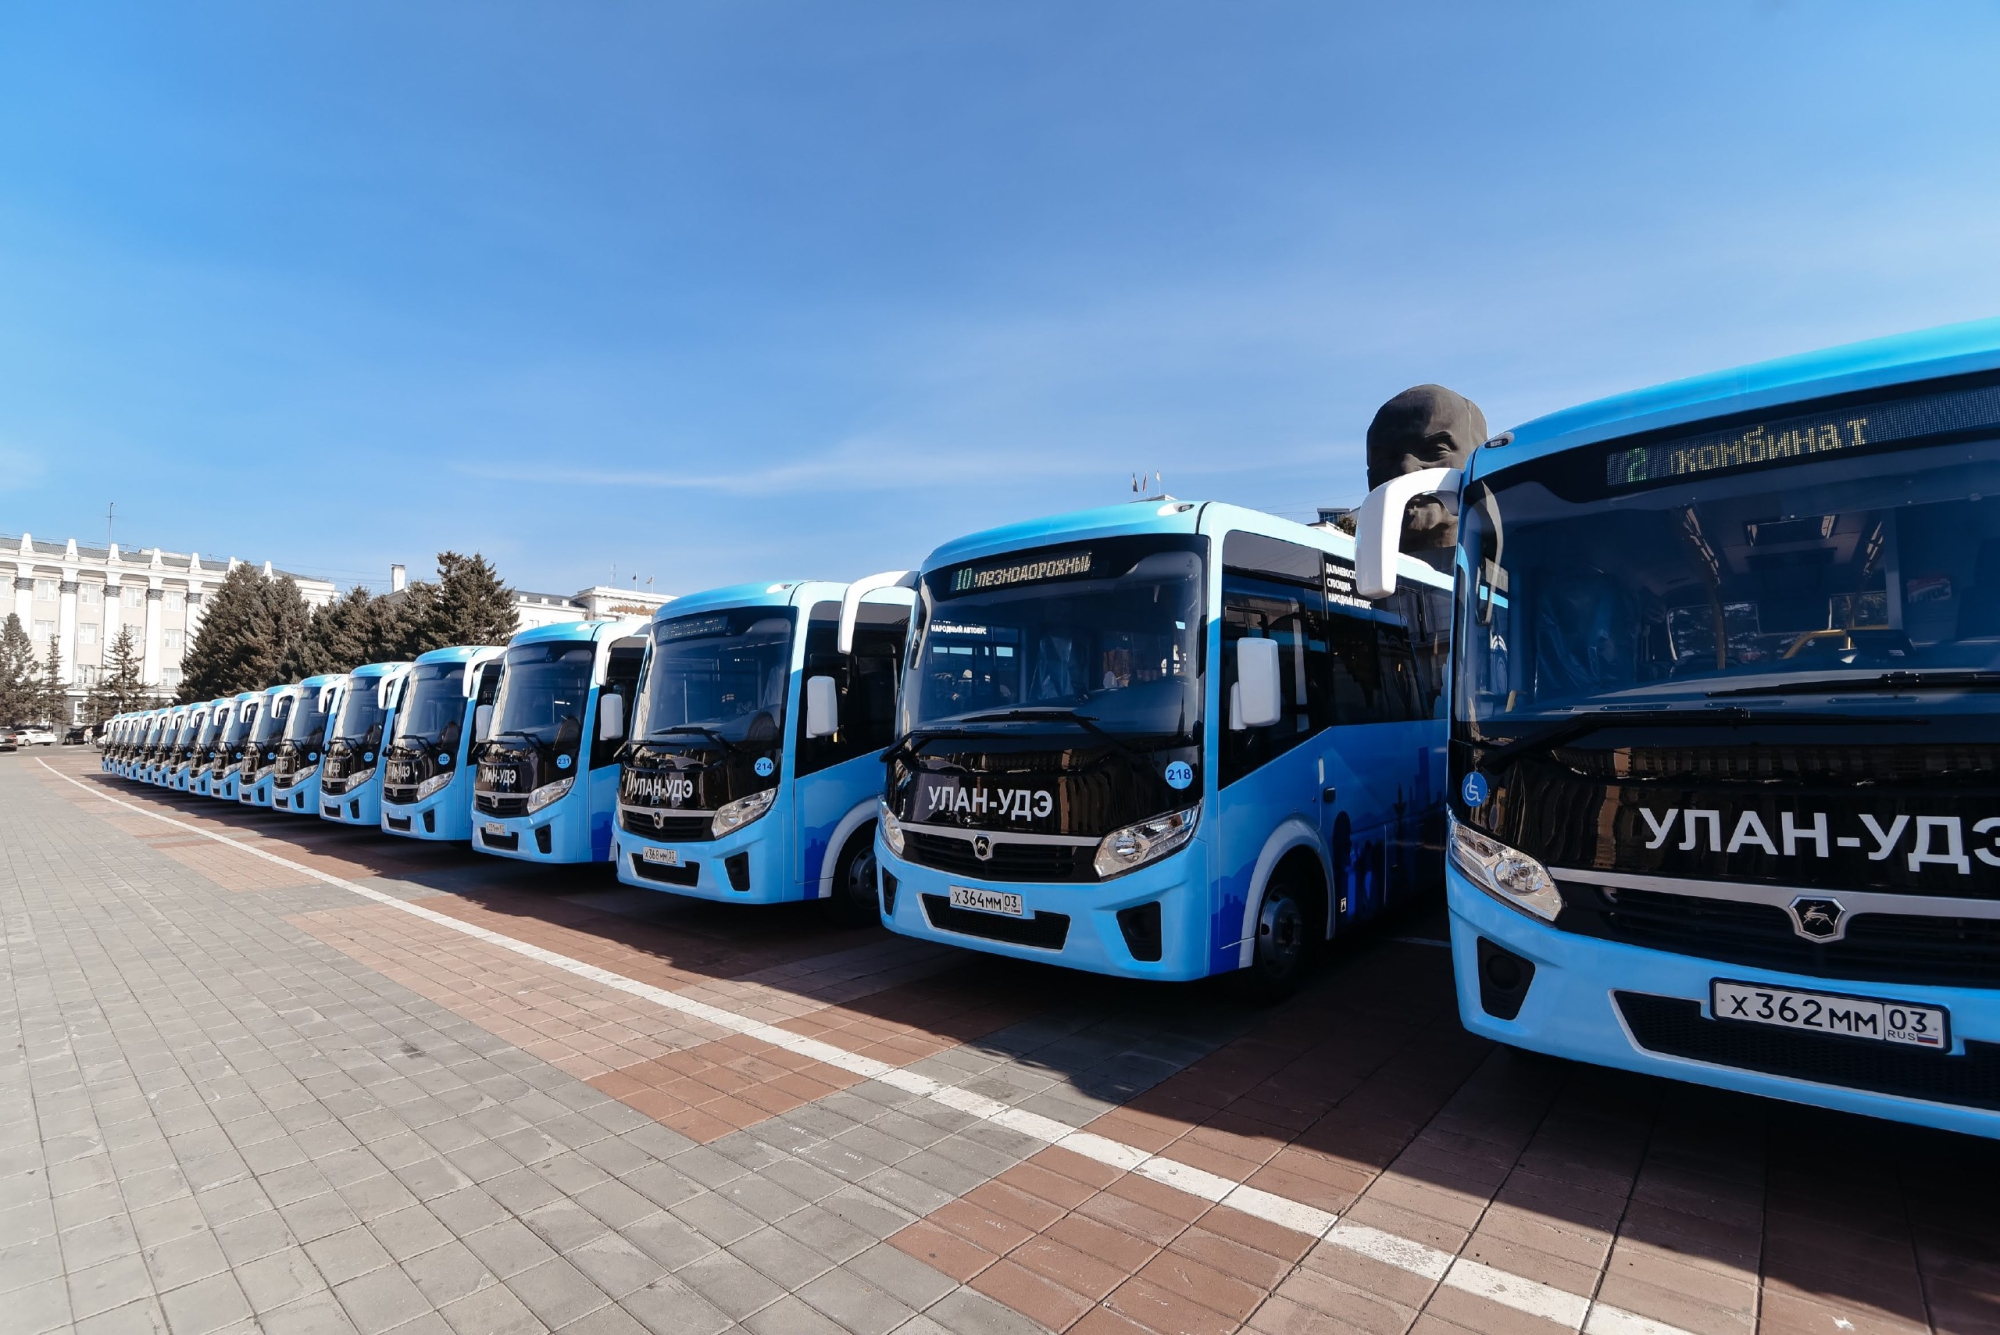 Фото В Улан-Удэ на выходные дни запускают 20 новых автобусов